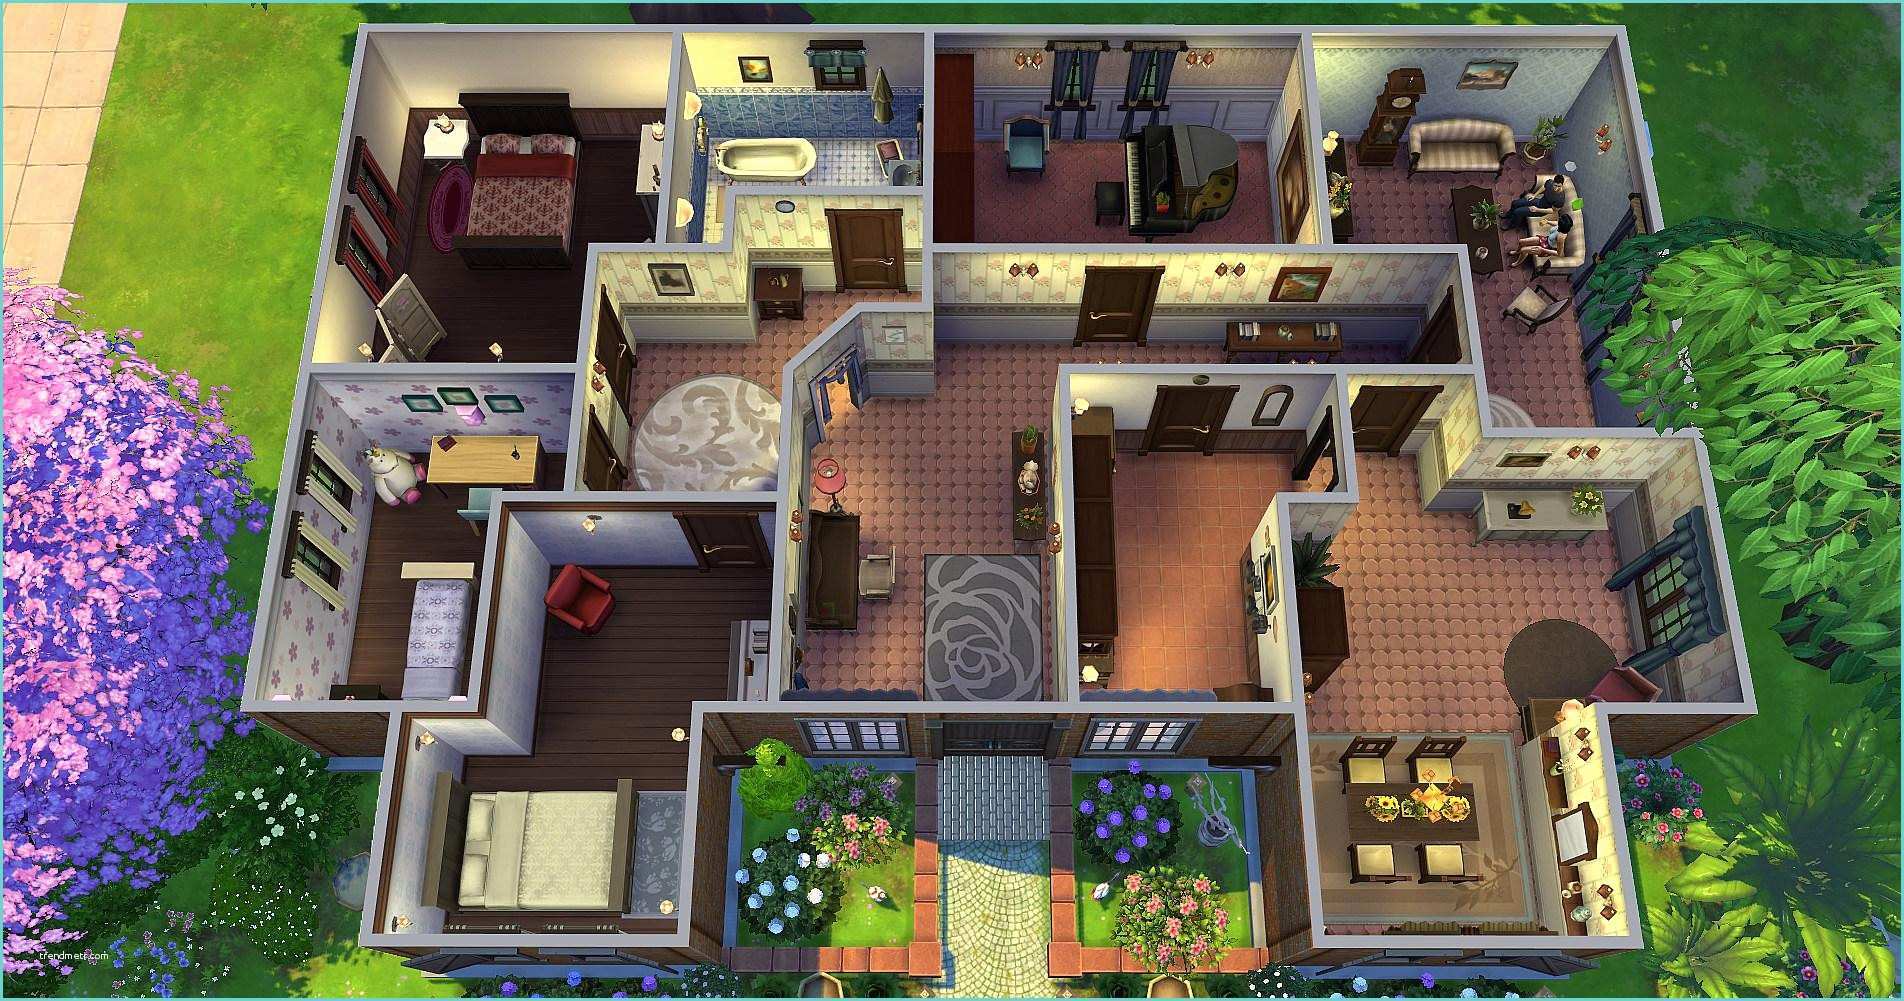 Sims 4 Construction Maison Moderne Awesome Maison Moderne De Luxe Sims 3 Contemporary Doztopo